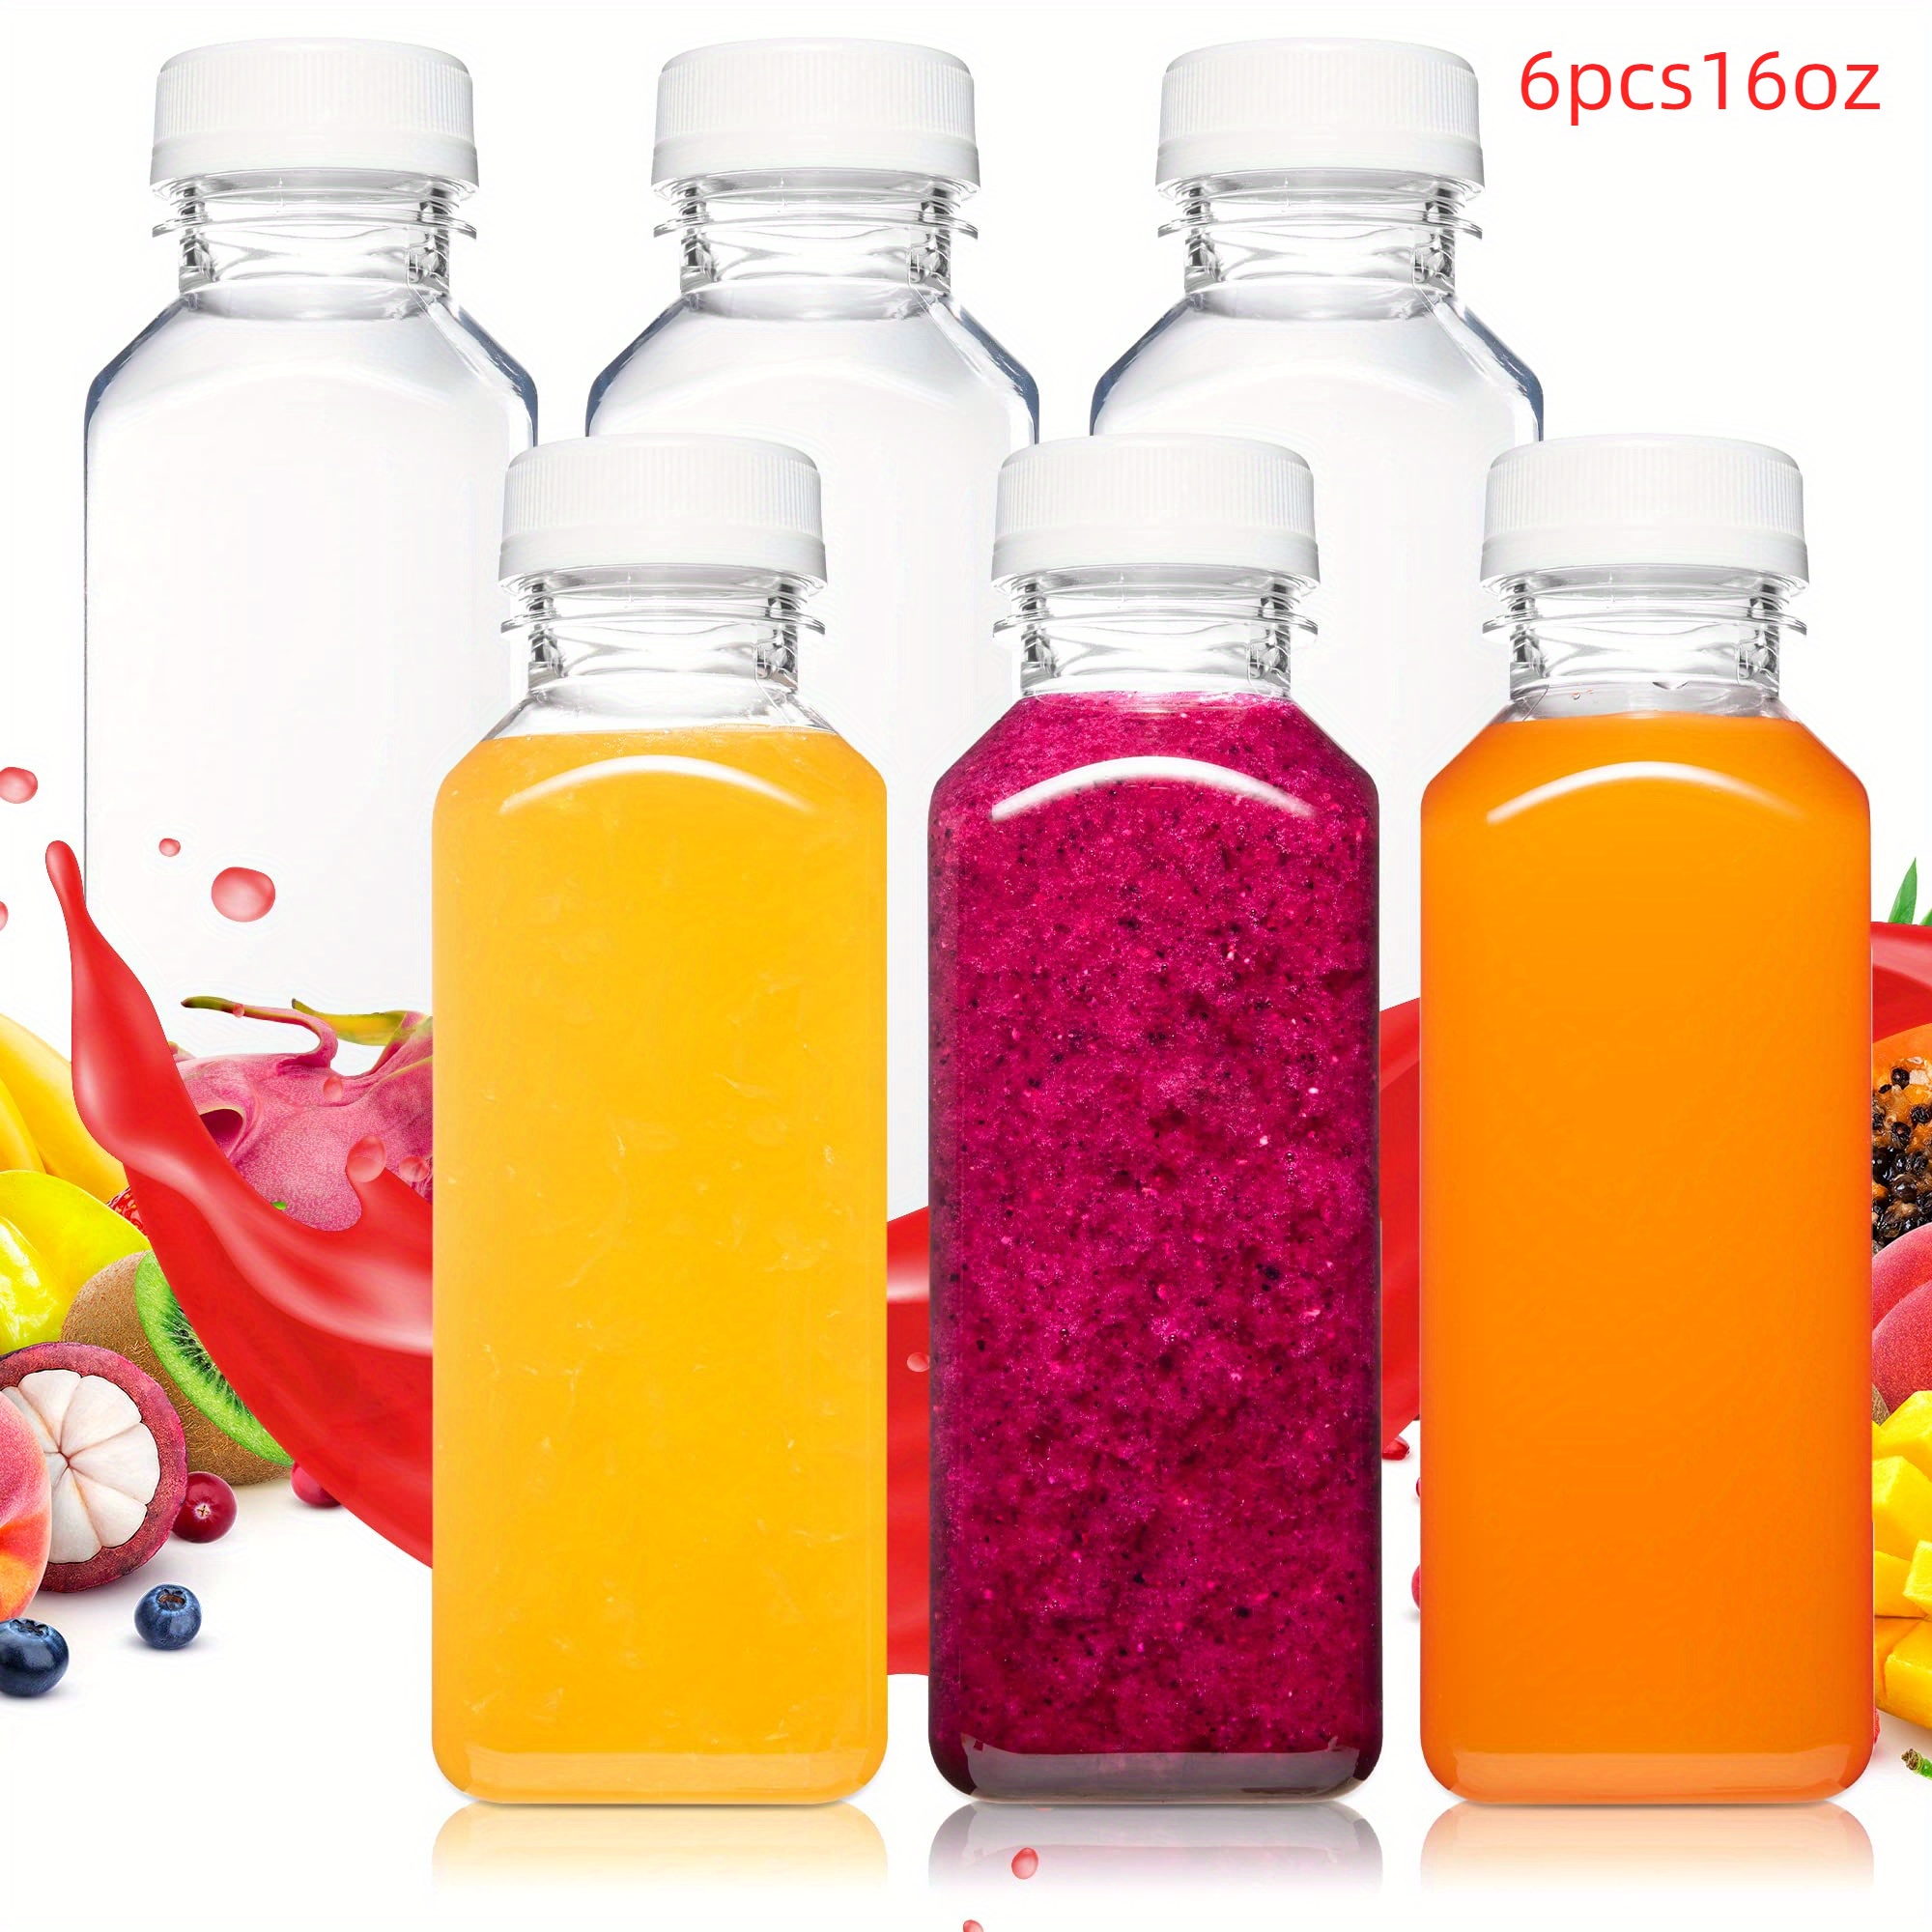 8 Oz. Empty Clear PET botellas plásticas de jugo con tapa por MT Products -  Set de 12 botellas y 12 tapas